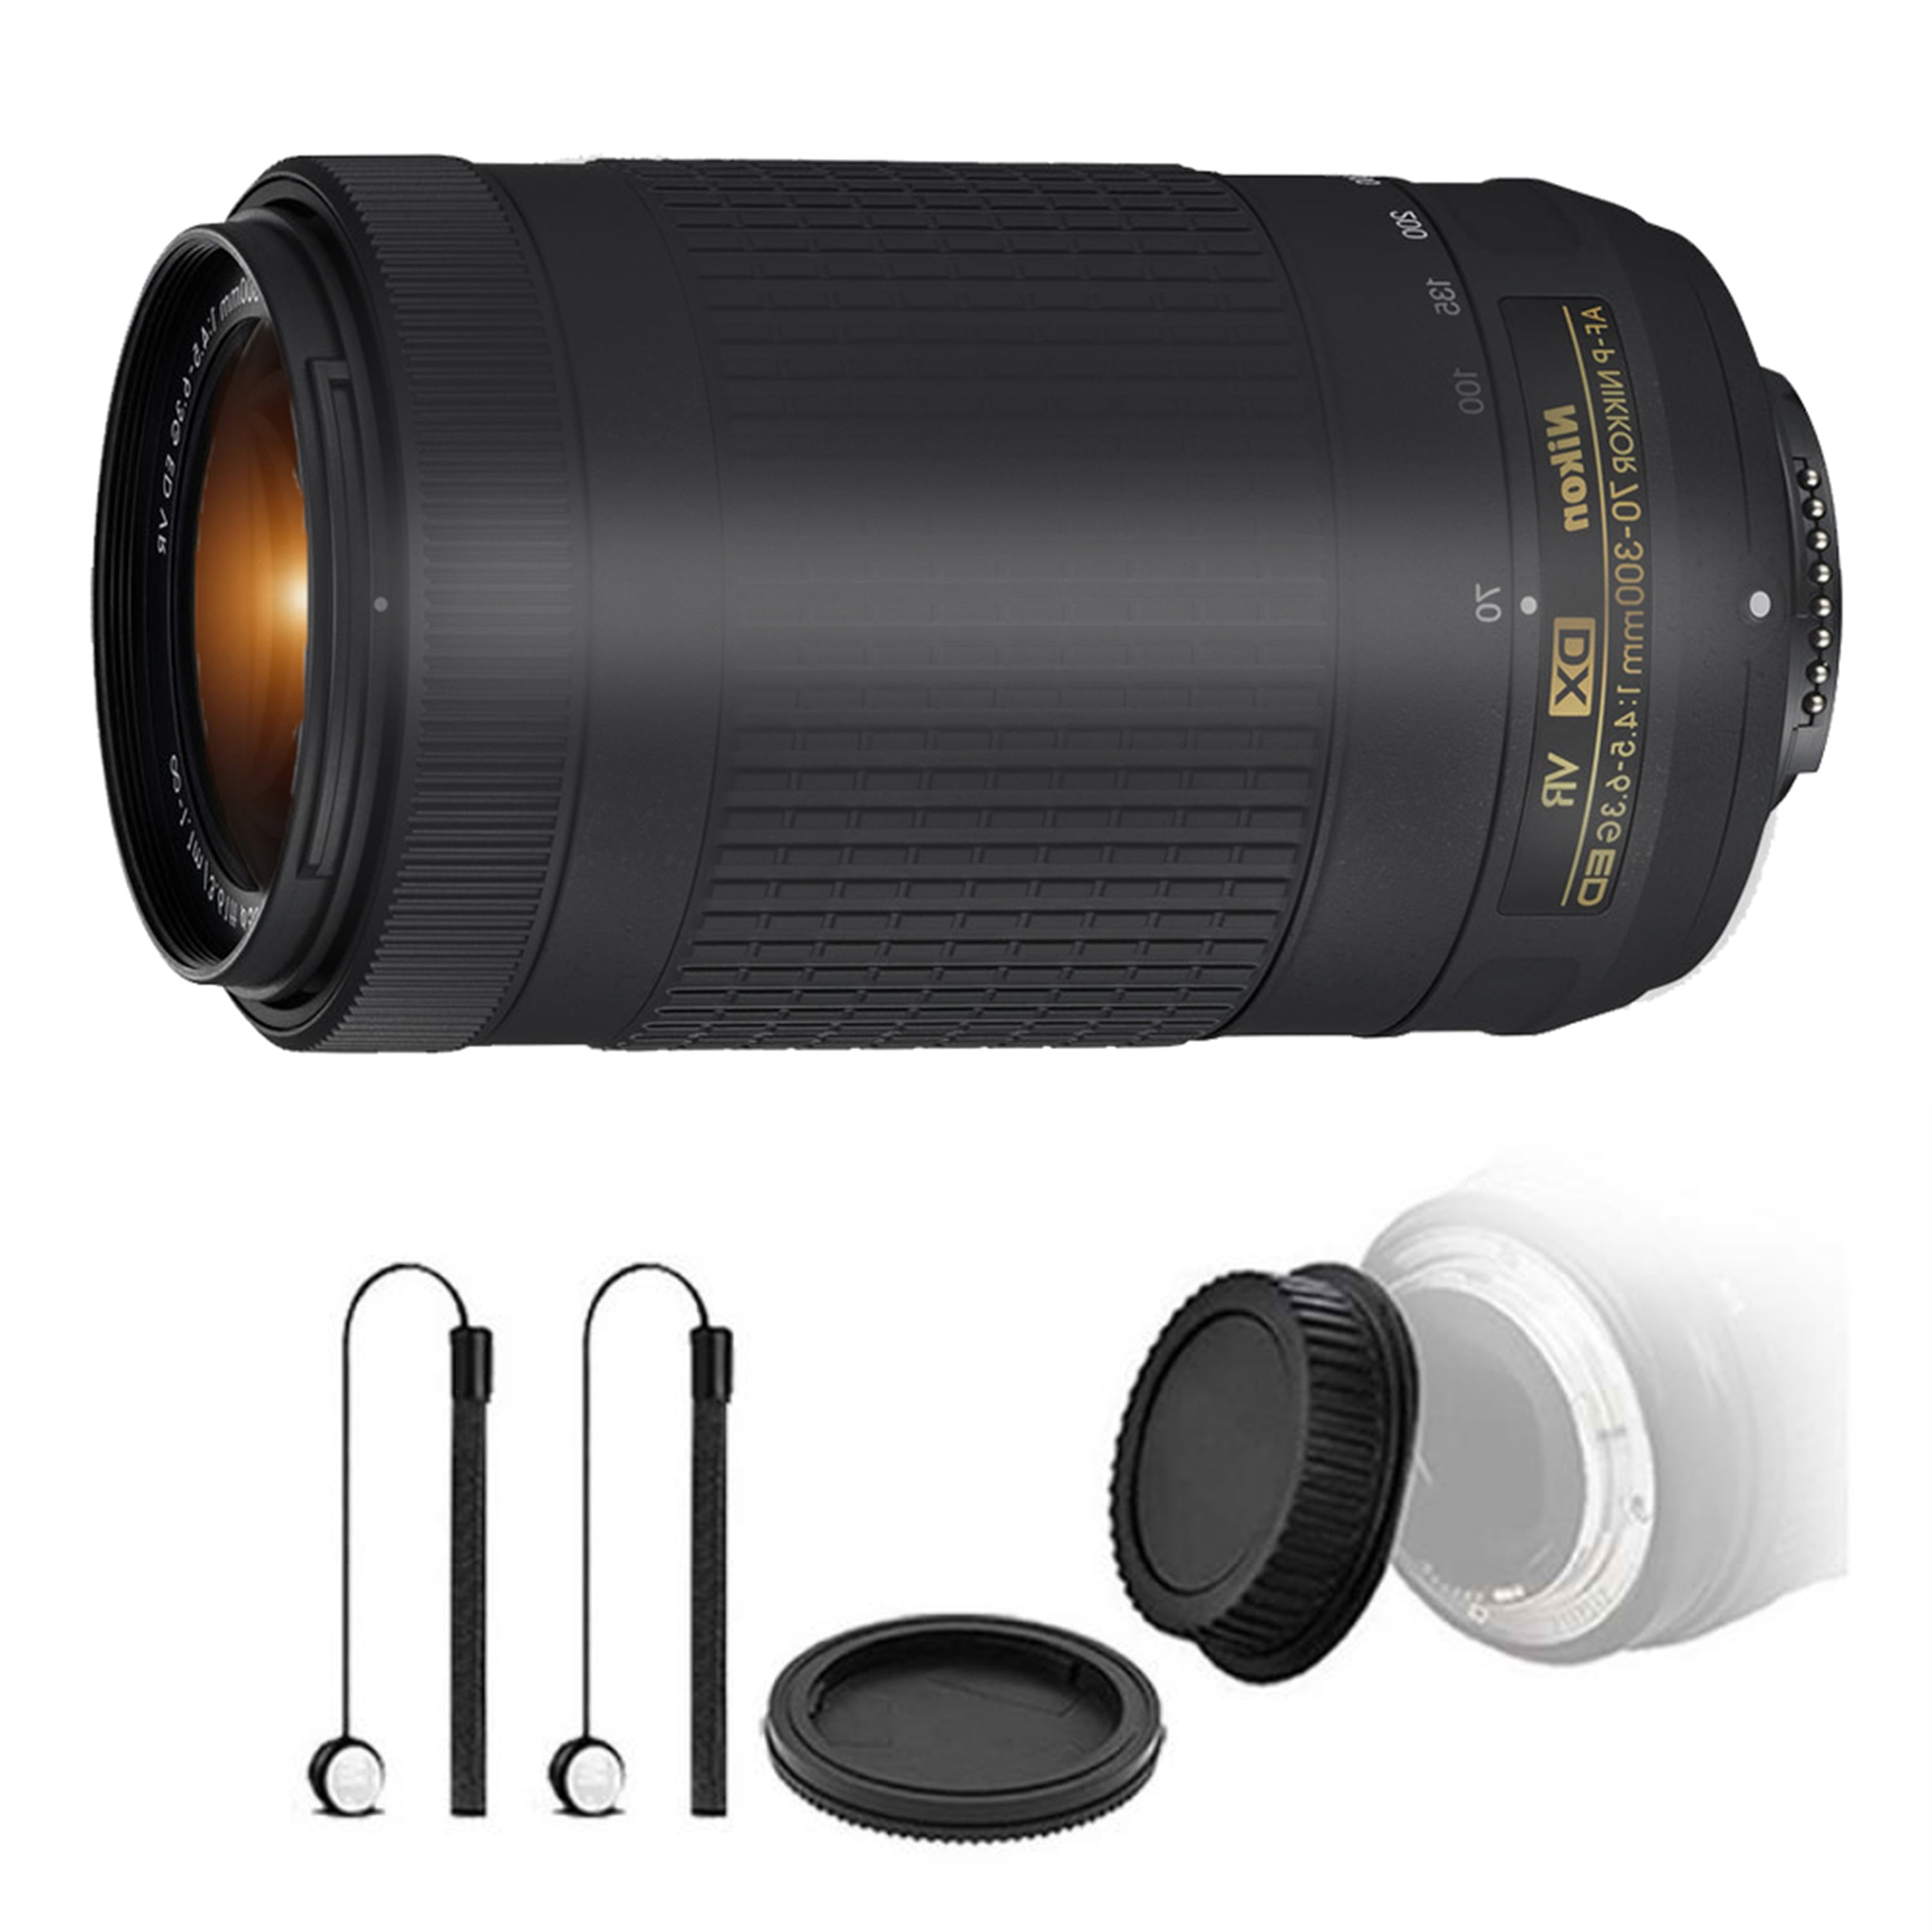 Nikon AF-P DX NIKKOR 70-300mm f/4.5-6.3G ED VR Lens with Accessory Kit For  D5300 , D5500 and D5600